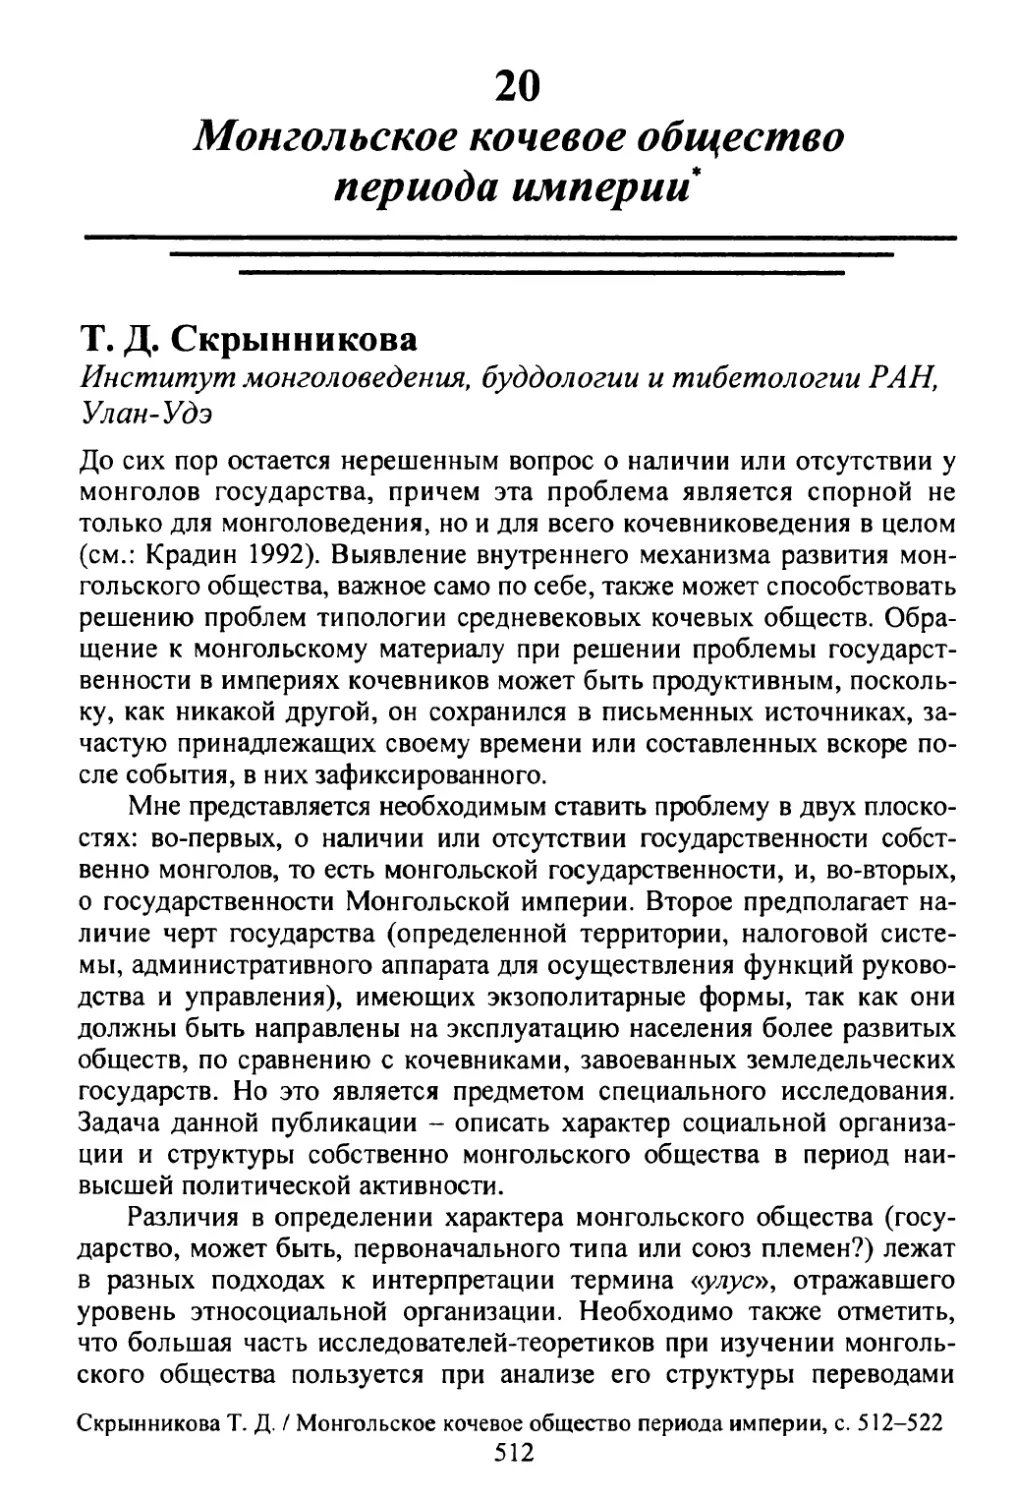 Т.Д. Скрынникова. Монгольское кочевое общество периода империи